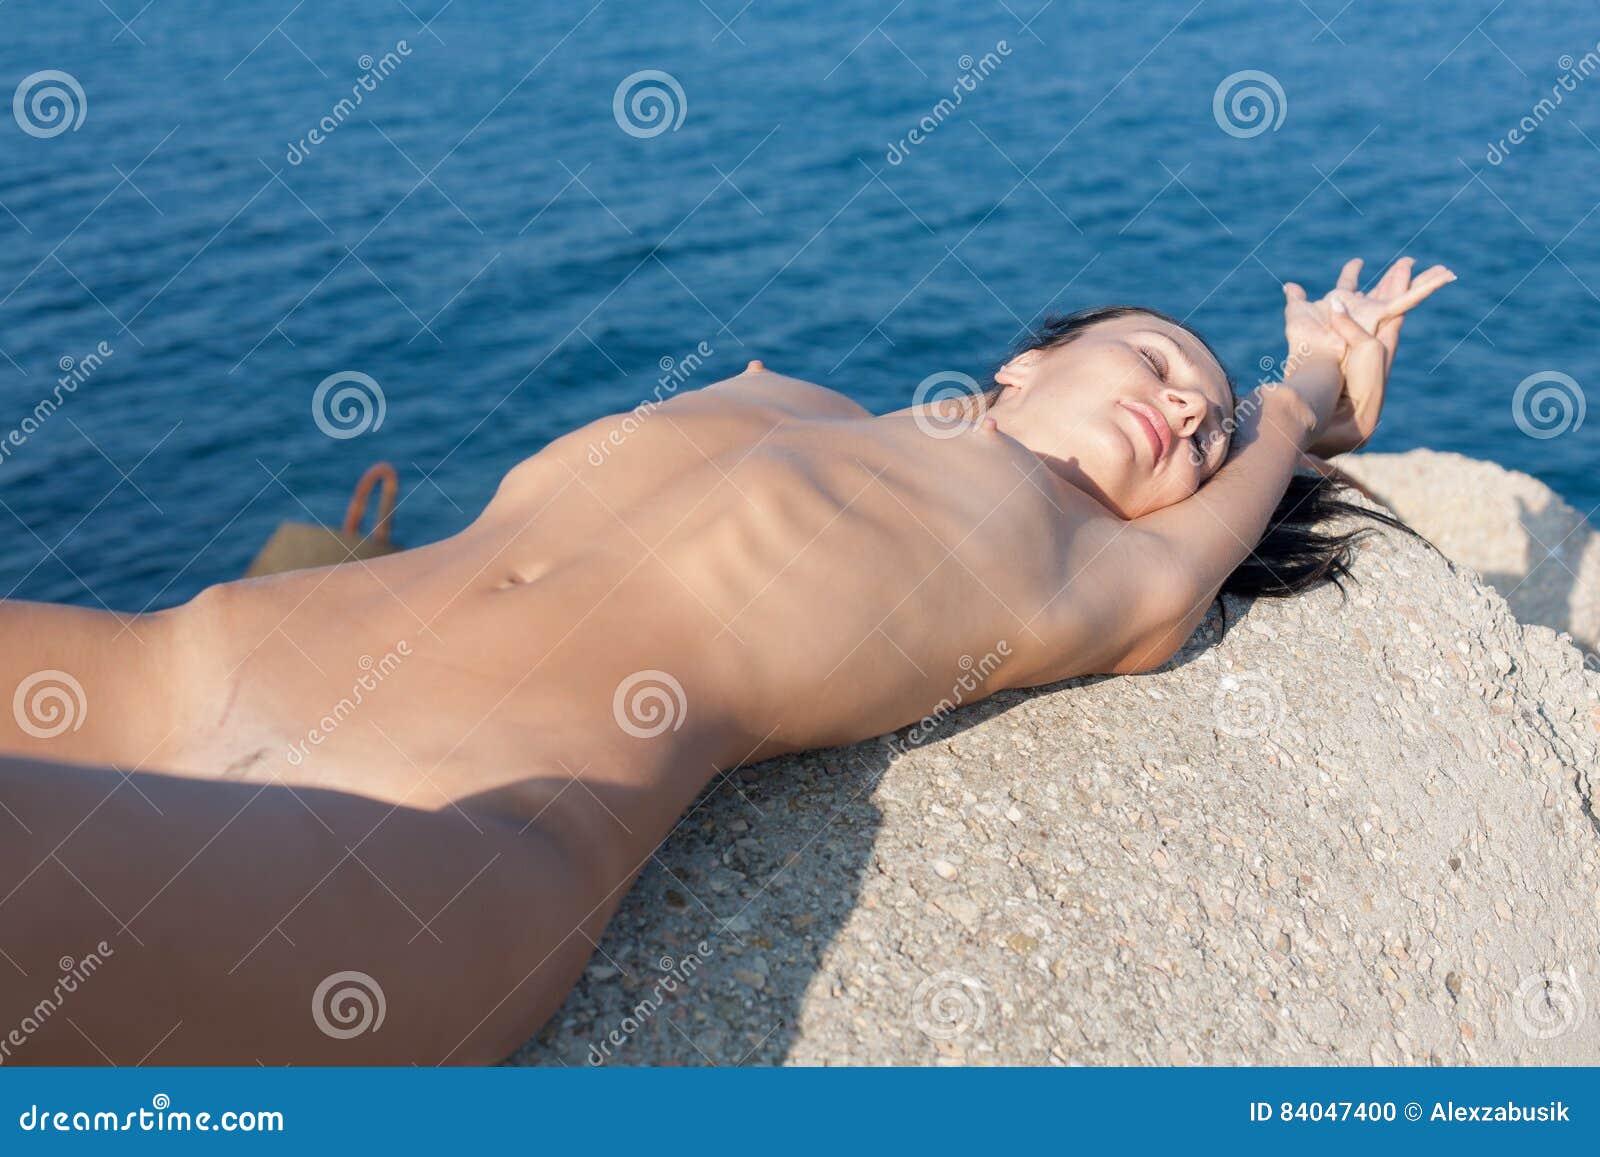 Skinny teen sunbathes in topless in HD video